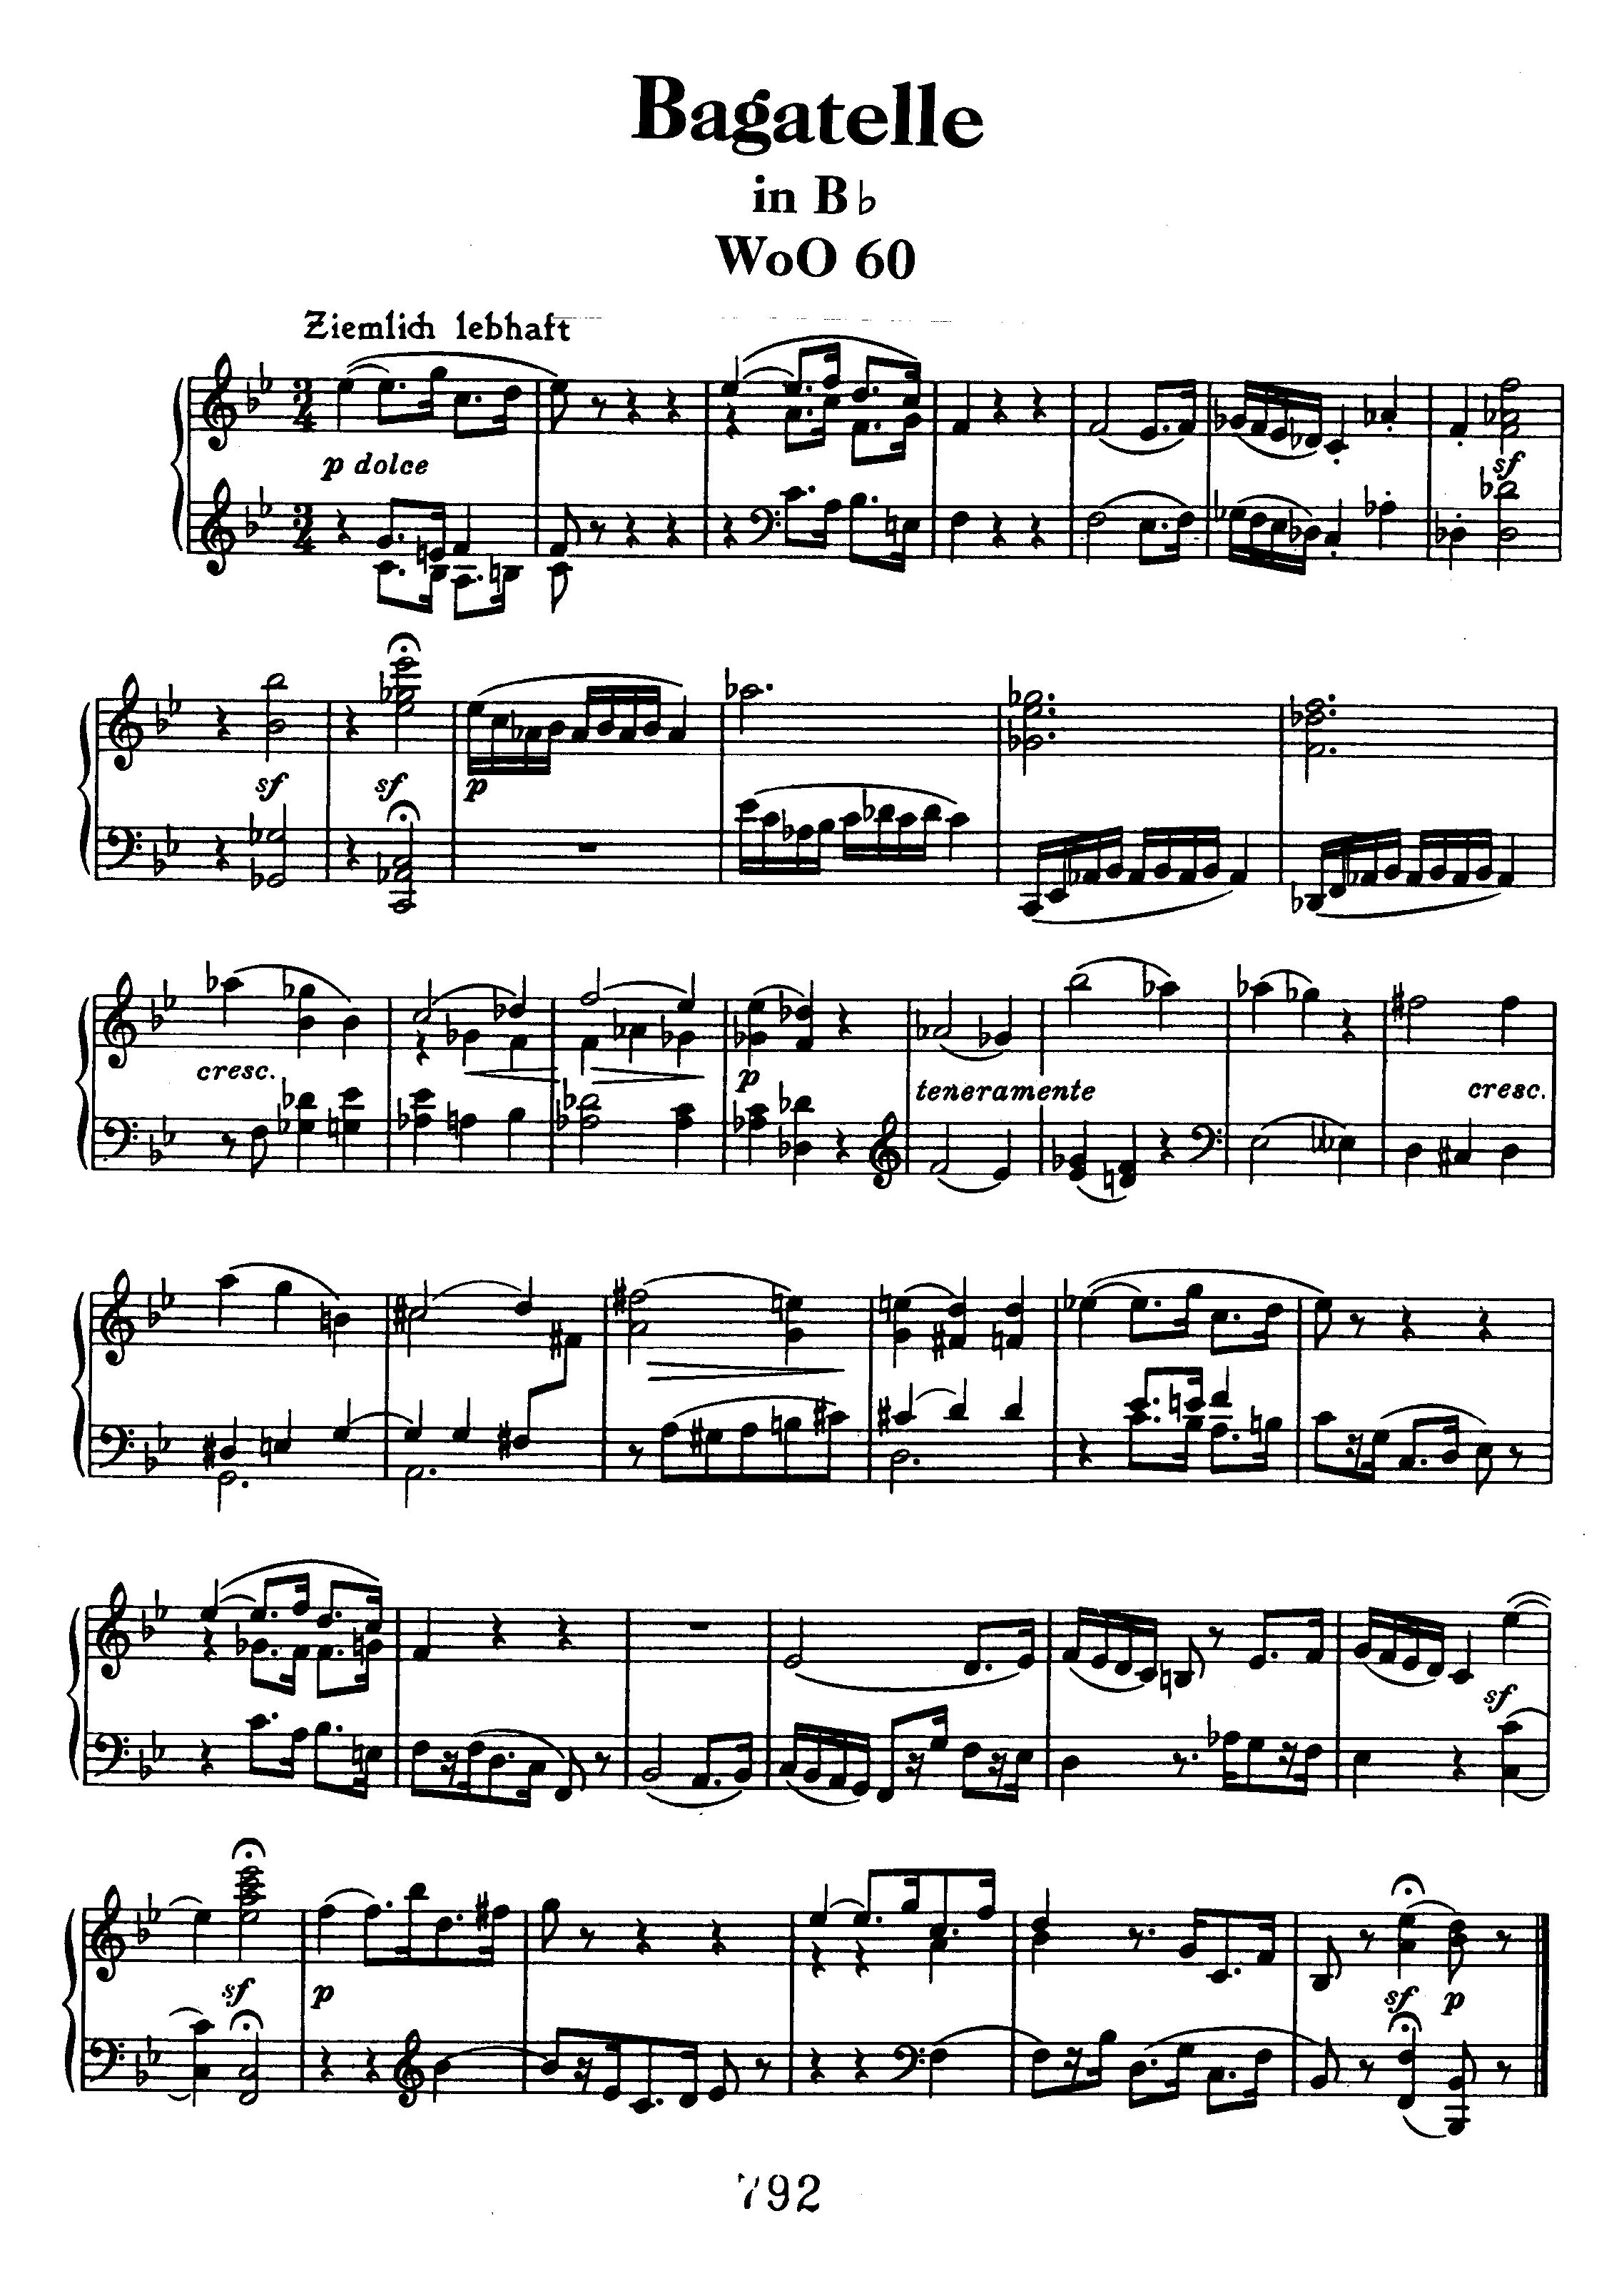 Bagatelle in Bb WoO 60ピアノ譜